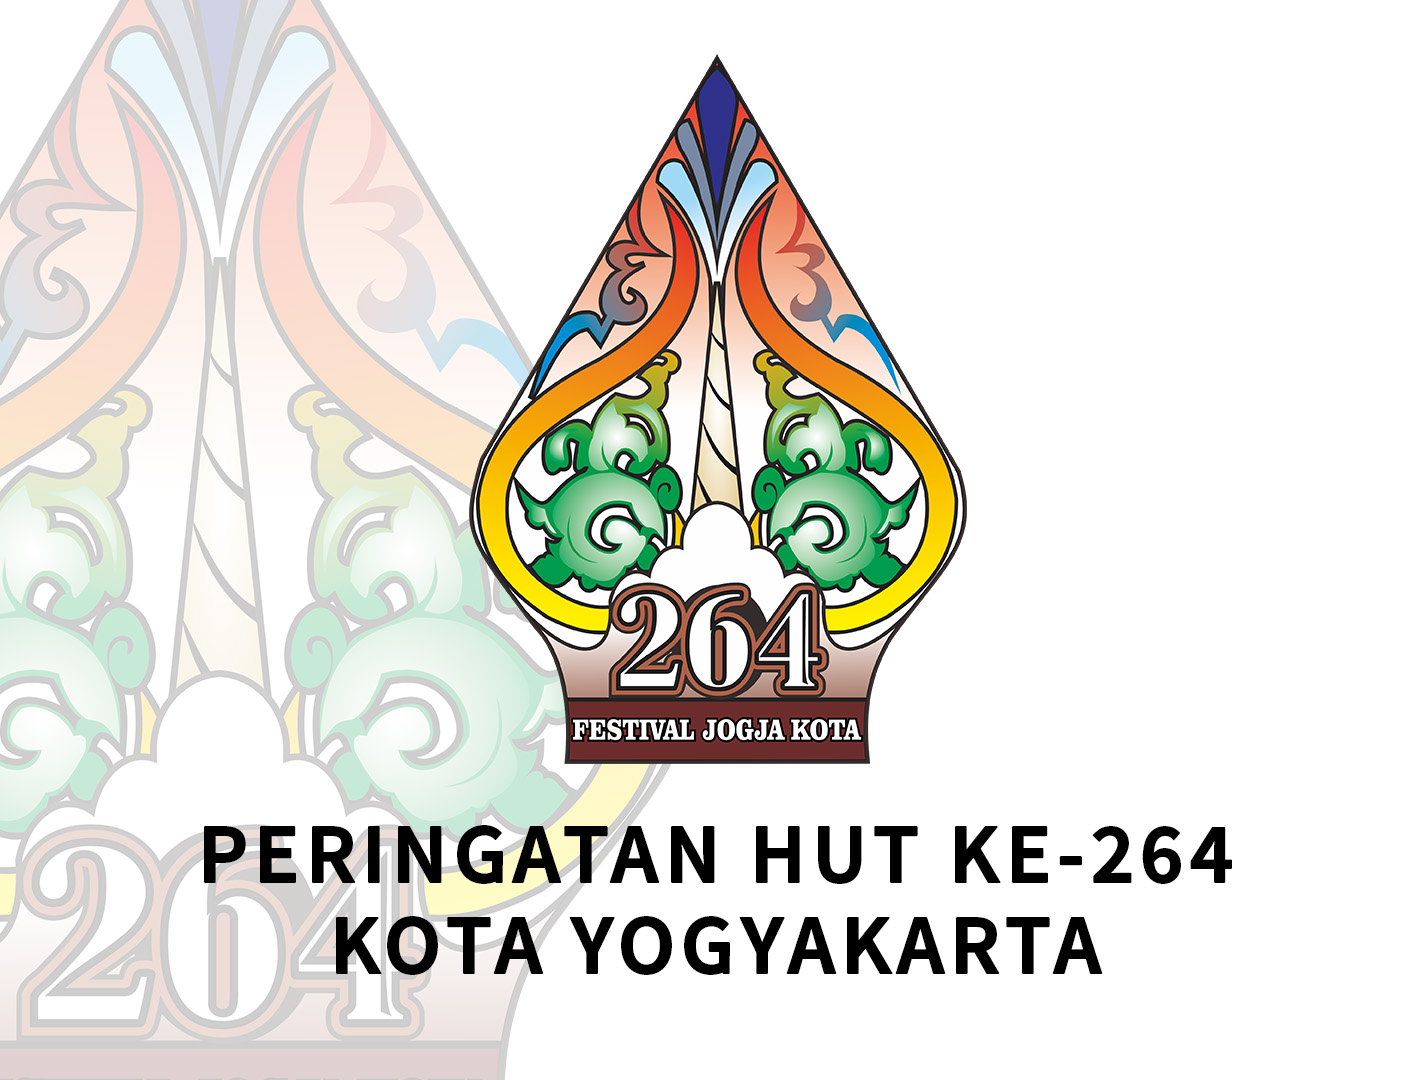 Peringatan HUT ke-264 Kota Yogyakarta